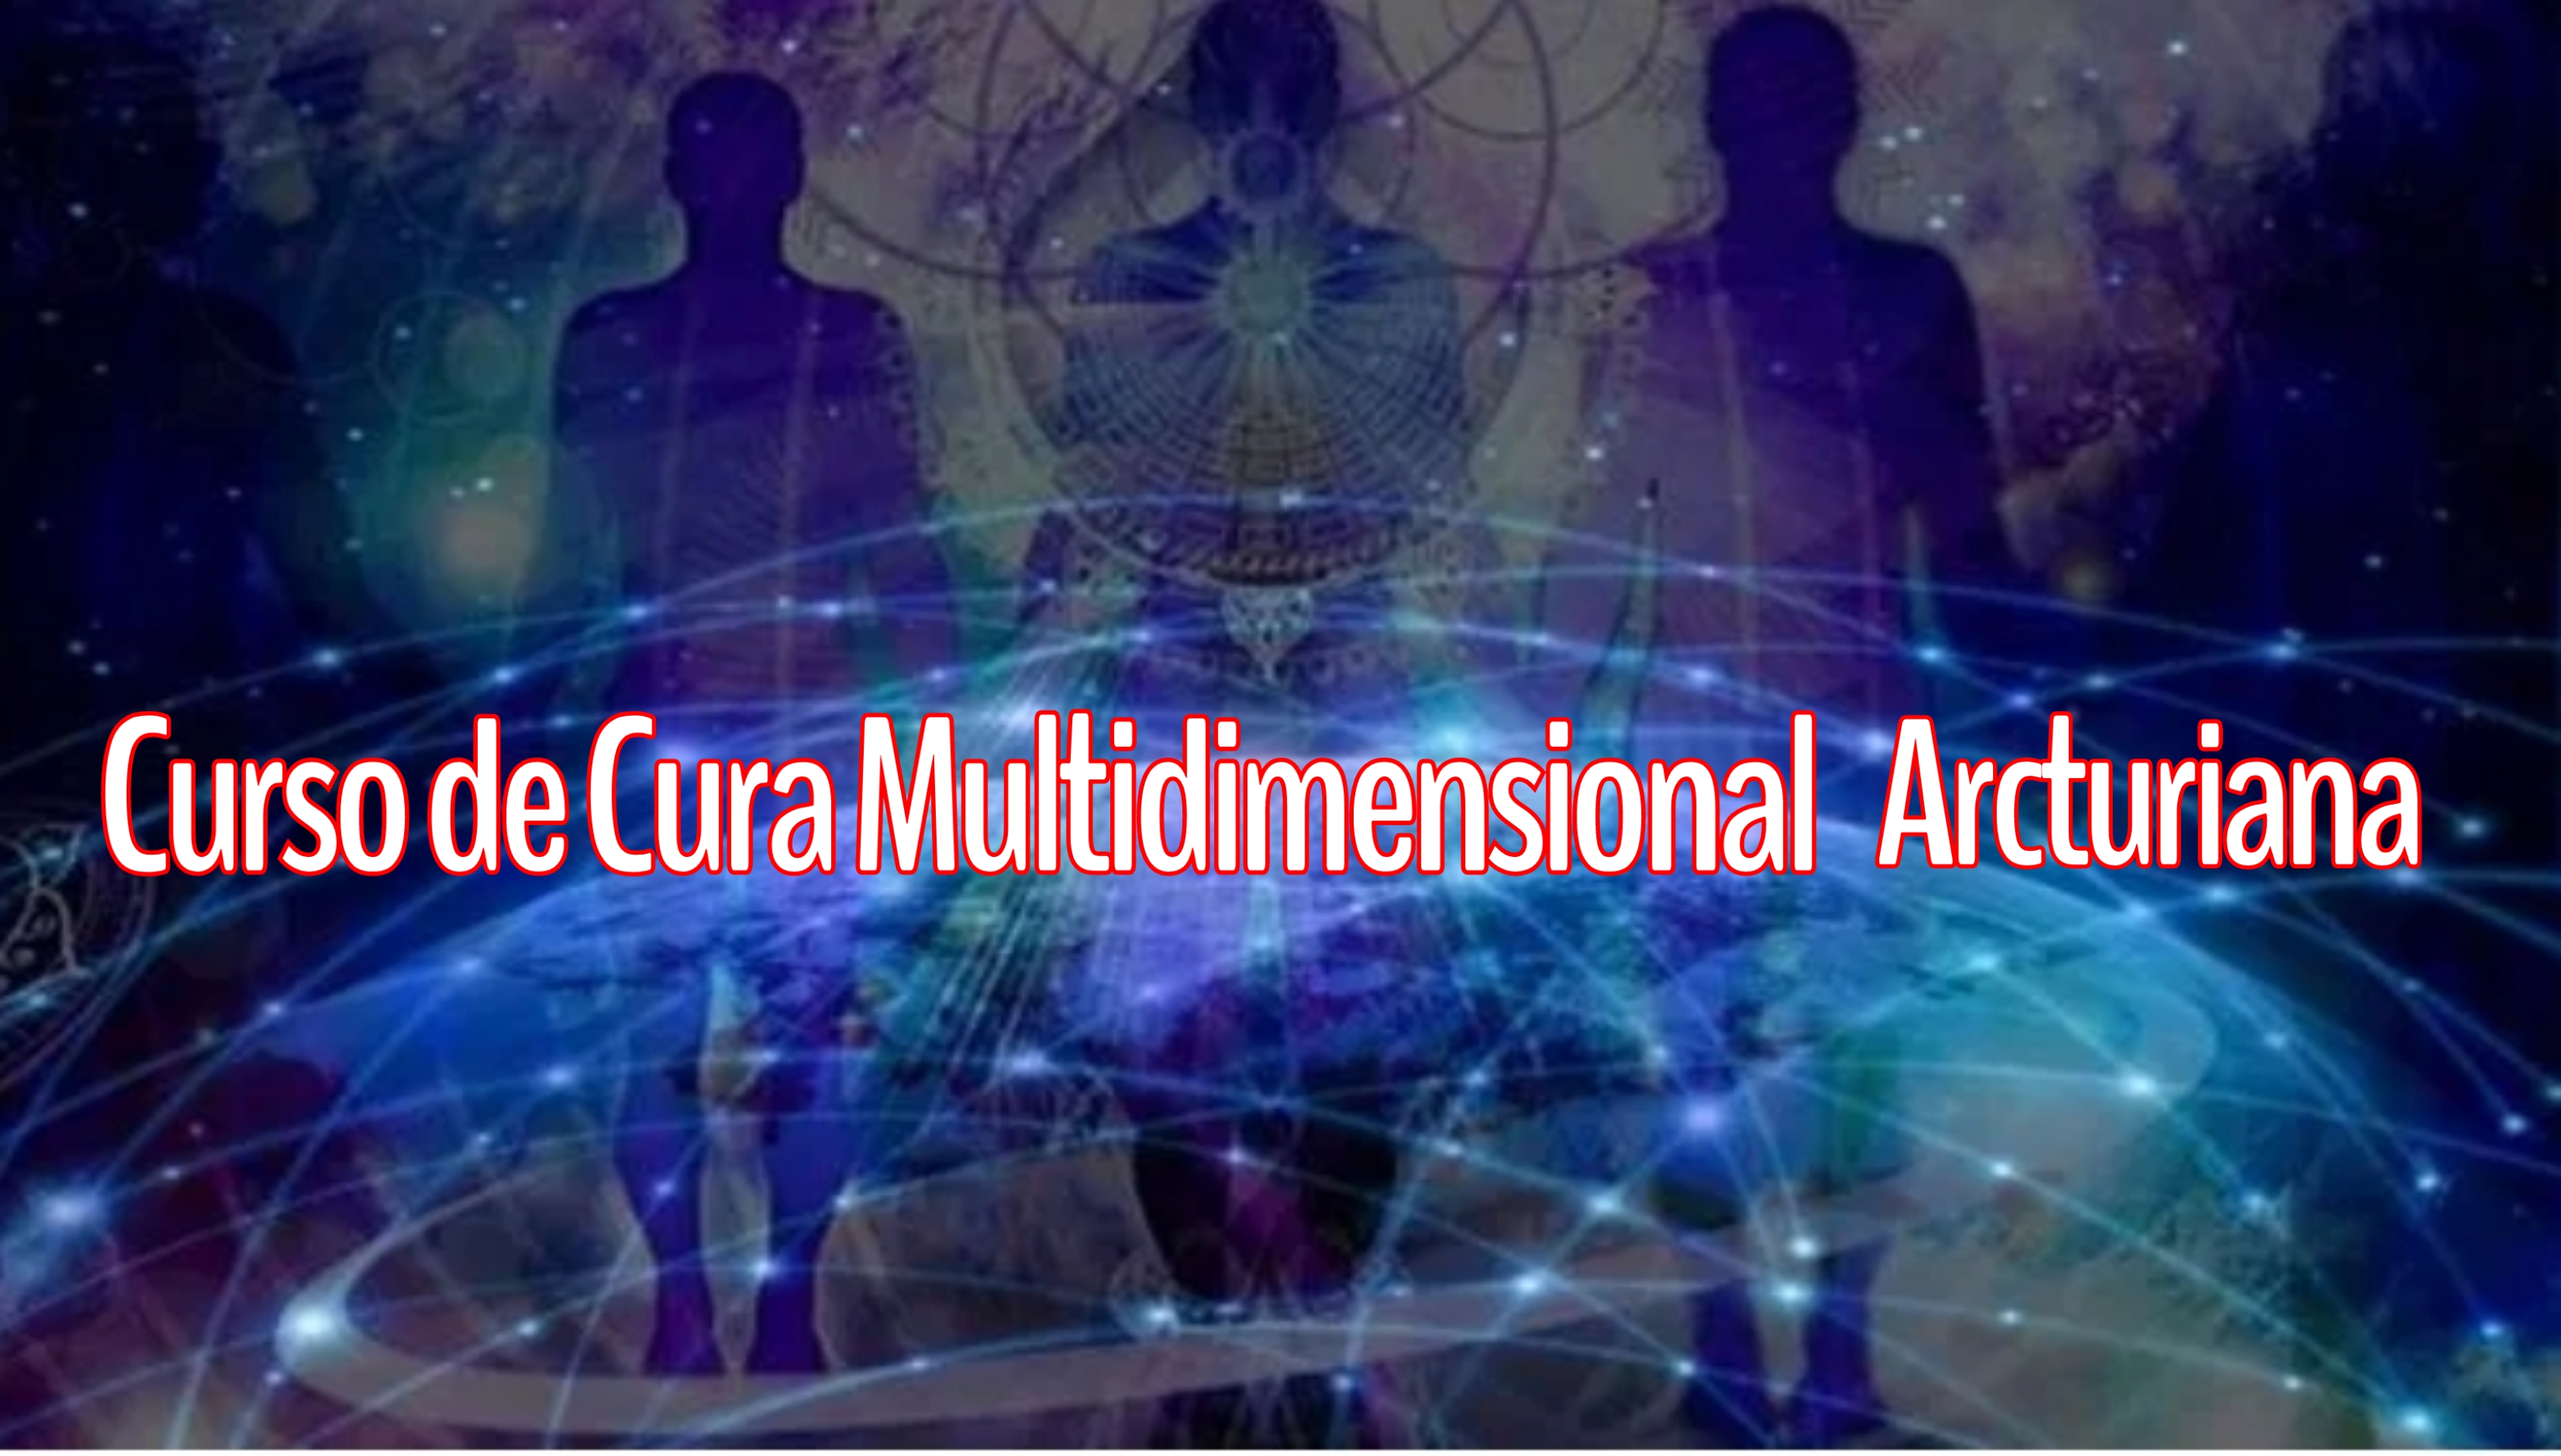 Formação no Sistema de Cura Multidimensional Arcturiana